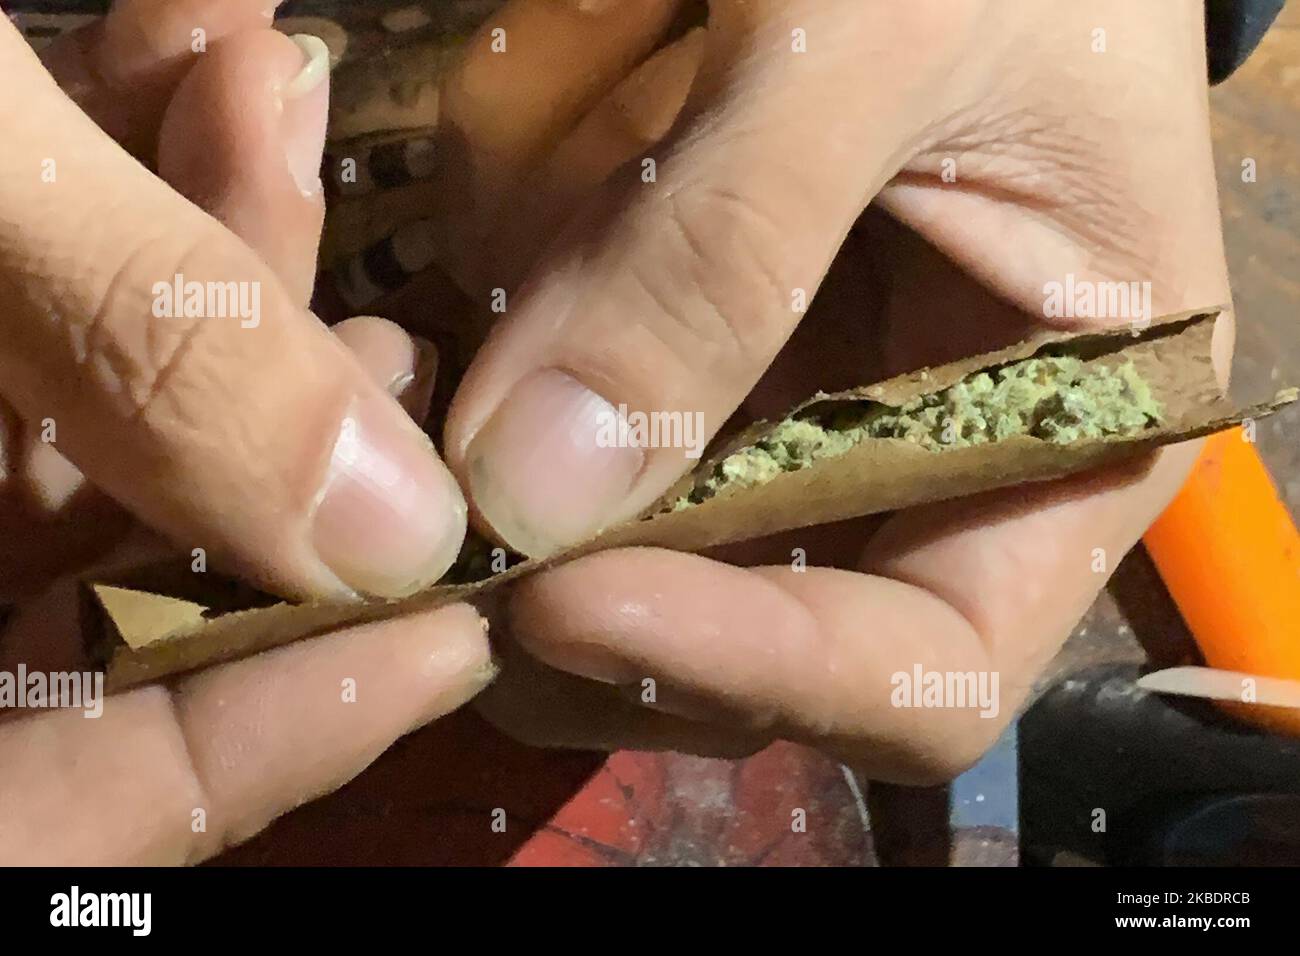 Freizeitkonsum von Marihuana wird am ersten Tag des legalisierten Cannabis in Chicago, Illinois, USA, am 1. Januar 2020 beobachtet. Illinois wurde der elfte Staat in den Vereinigten Staaten, der Marihuana für Erholungszwecke legalisierte. Die Sammlung umfasst einen Benutzer, der Unkraut in einem Zigarillo rollt, Benutzer, die eine Bong und stumpf rauchen und einen Behälter entschließen. (Foto von Patrick Gorski/NurPhoto) Stockfoto